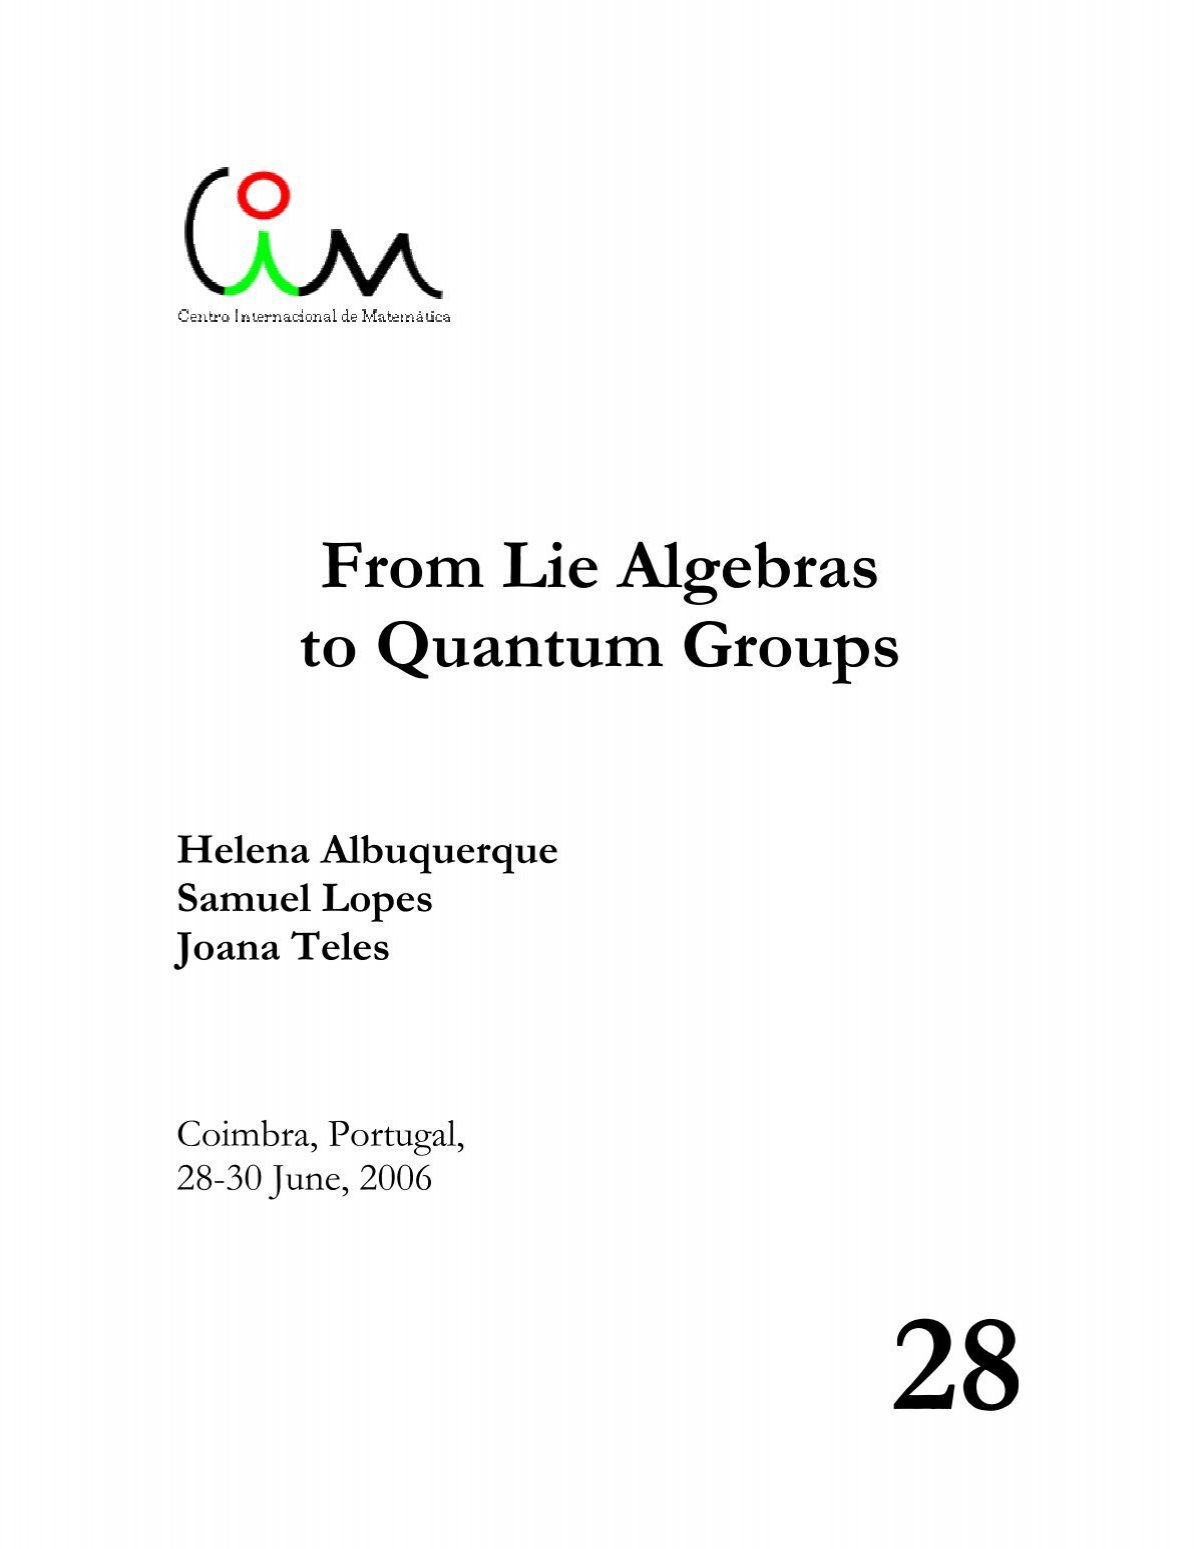 From Lie Algebras to Quantum Groups - Centro Internacional de